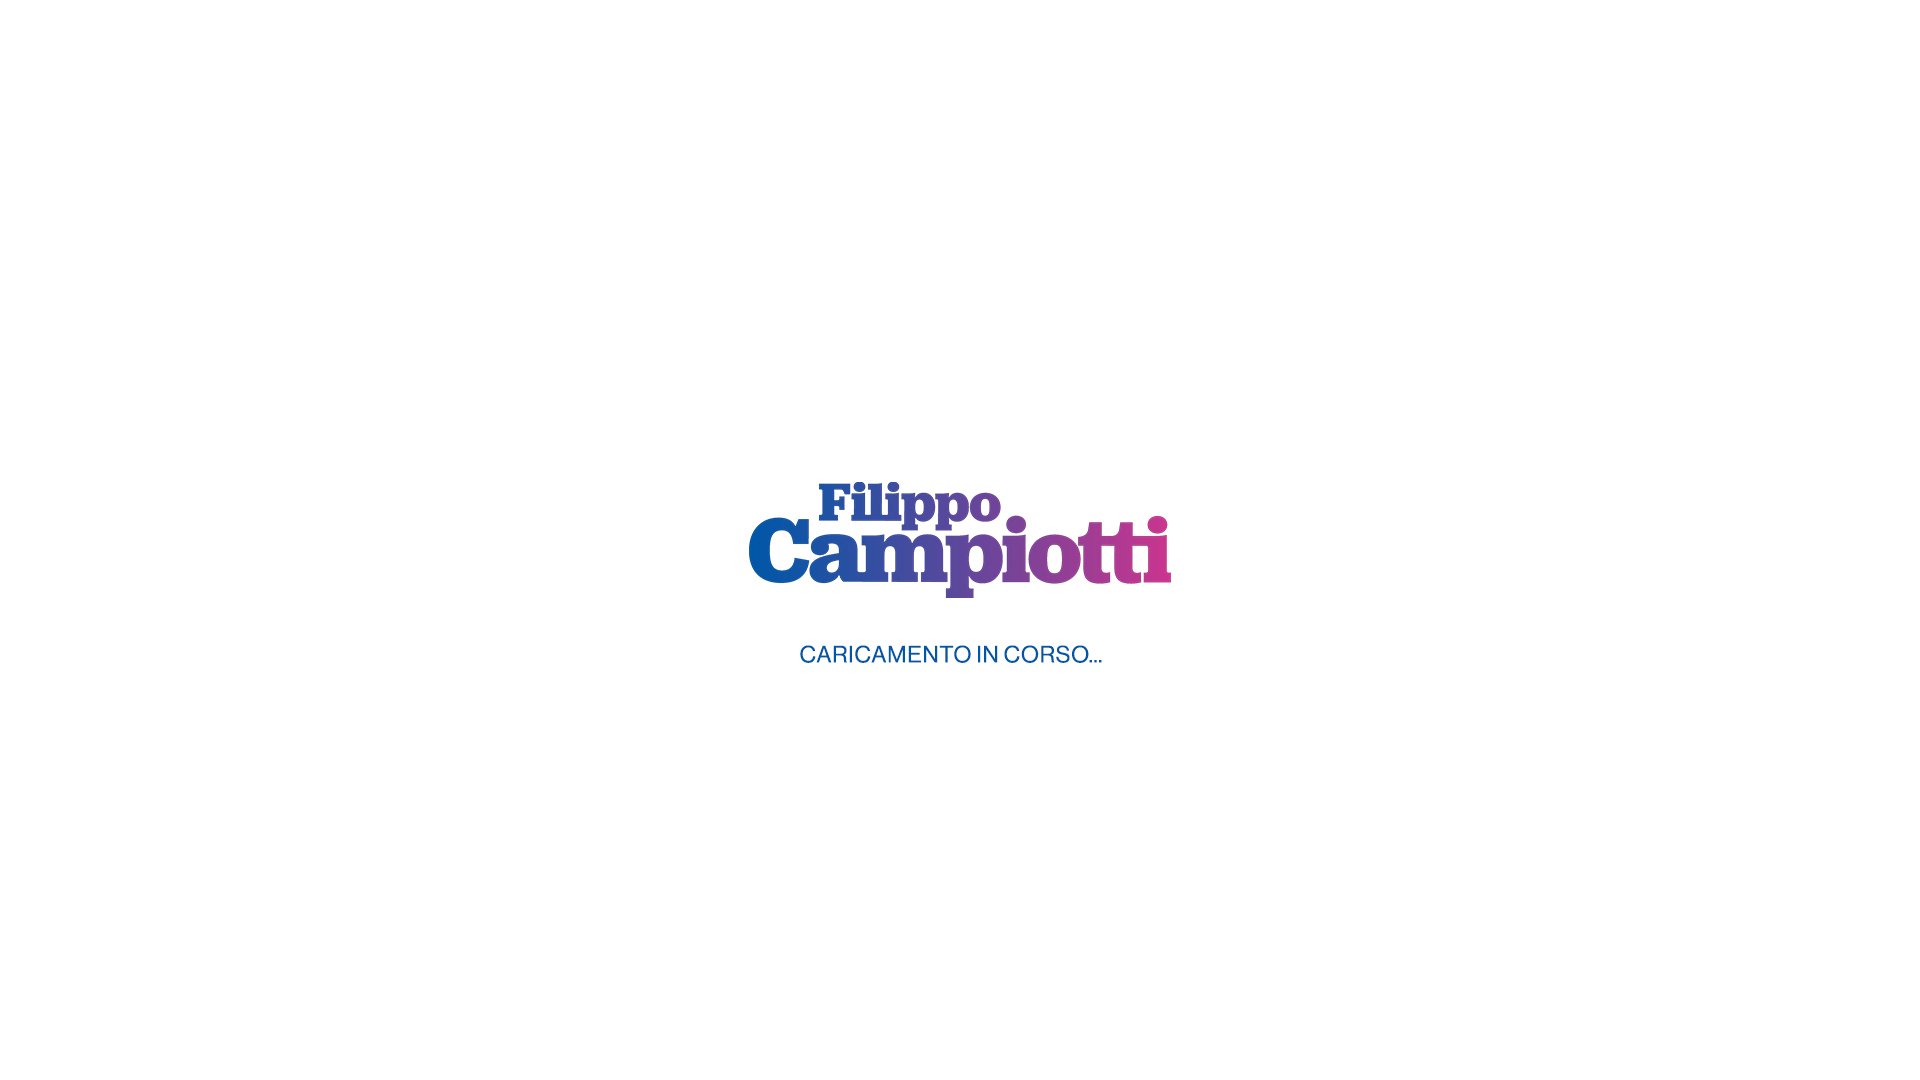 Filippo Campiotti